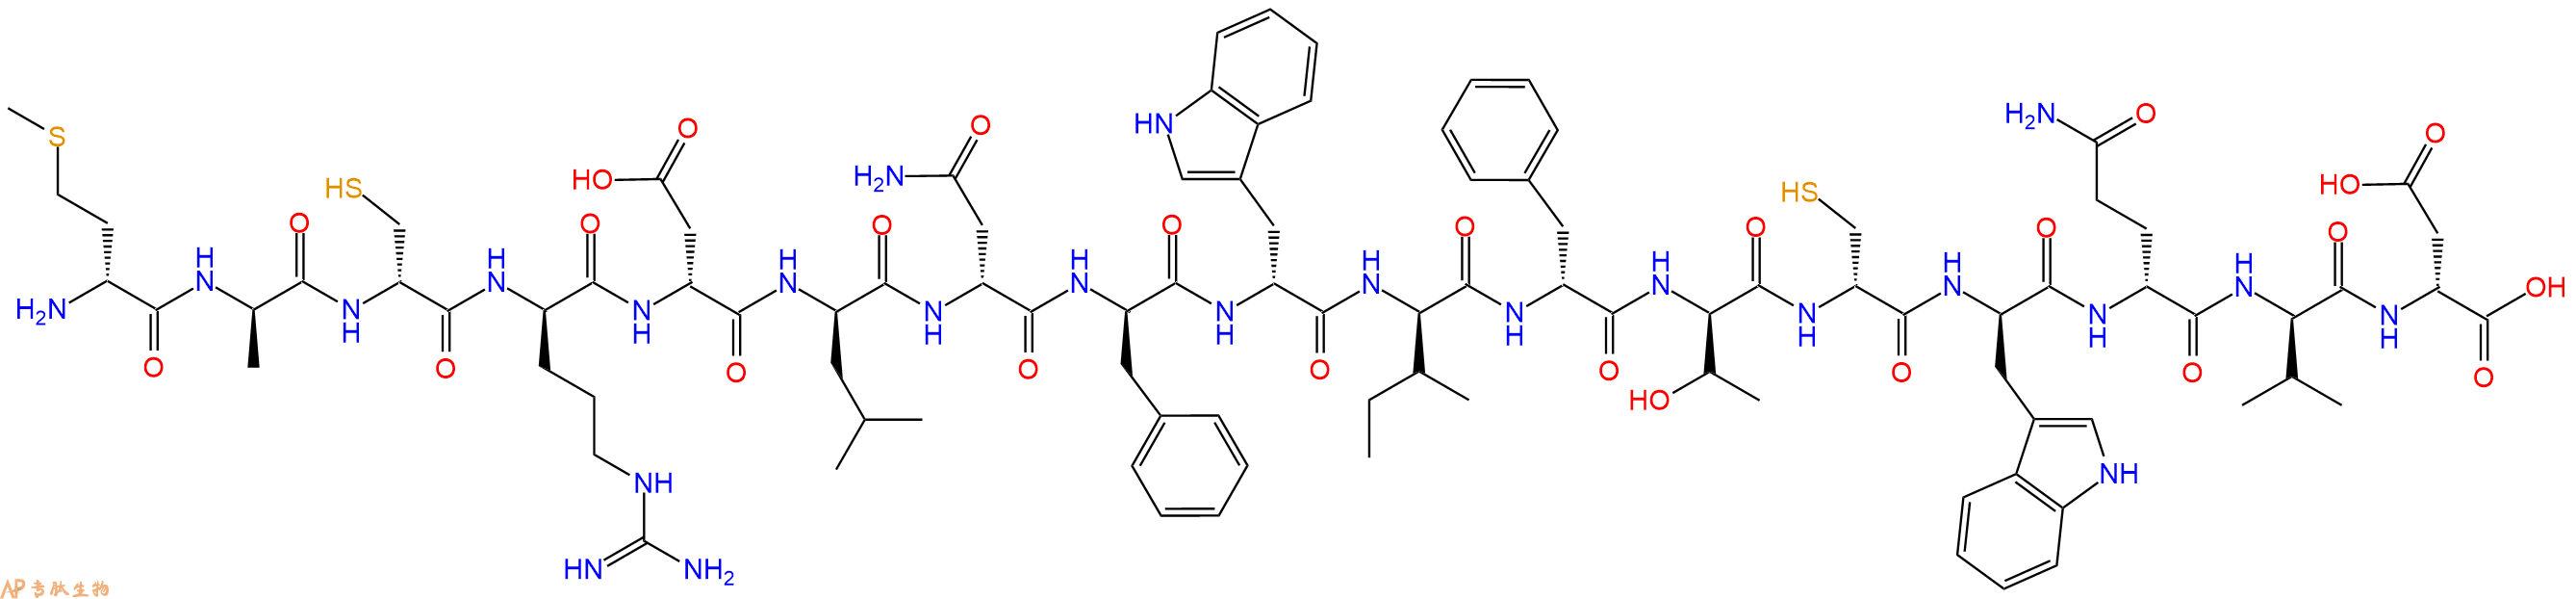 专肽生物产品H2N-DMet-DAla-DCys-DArg-DAsp-DLeu-DAsn-DPhe-DTrp-D